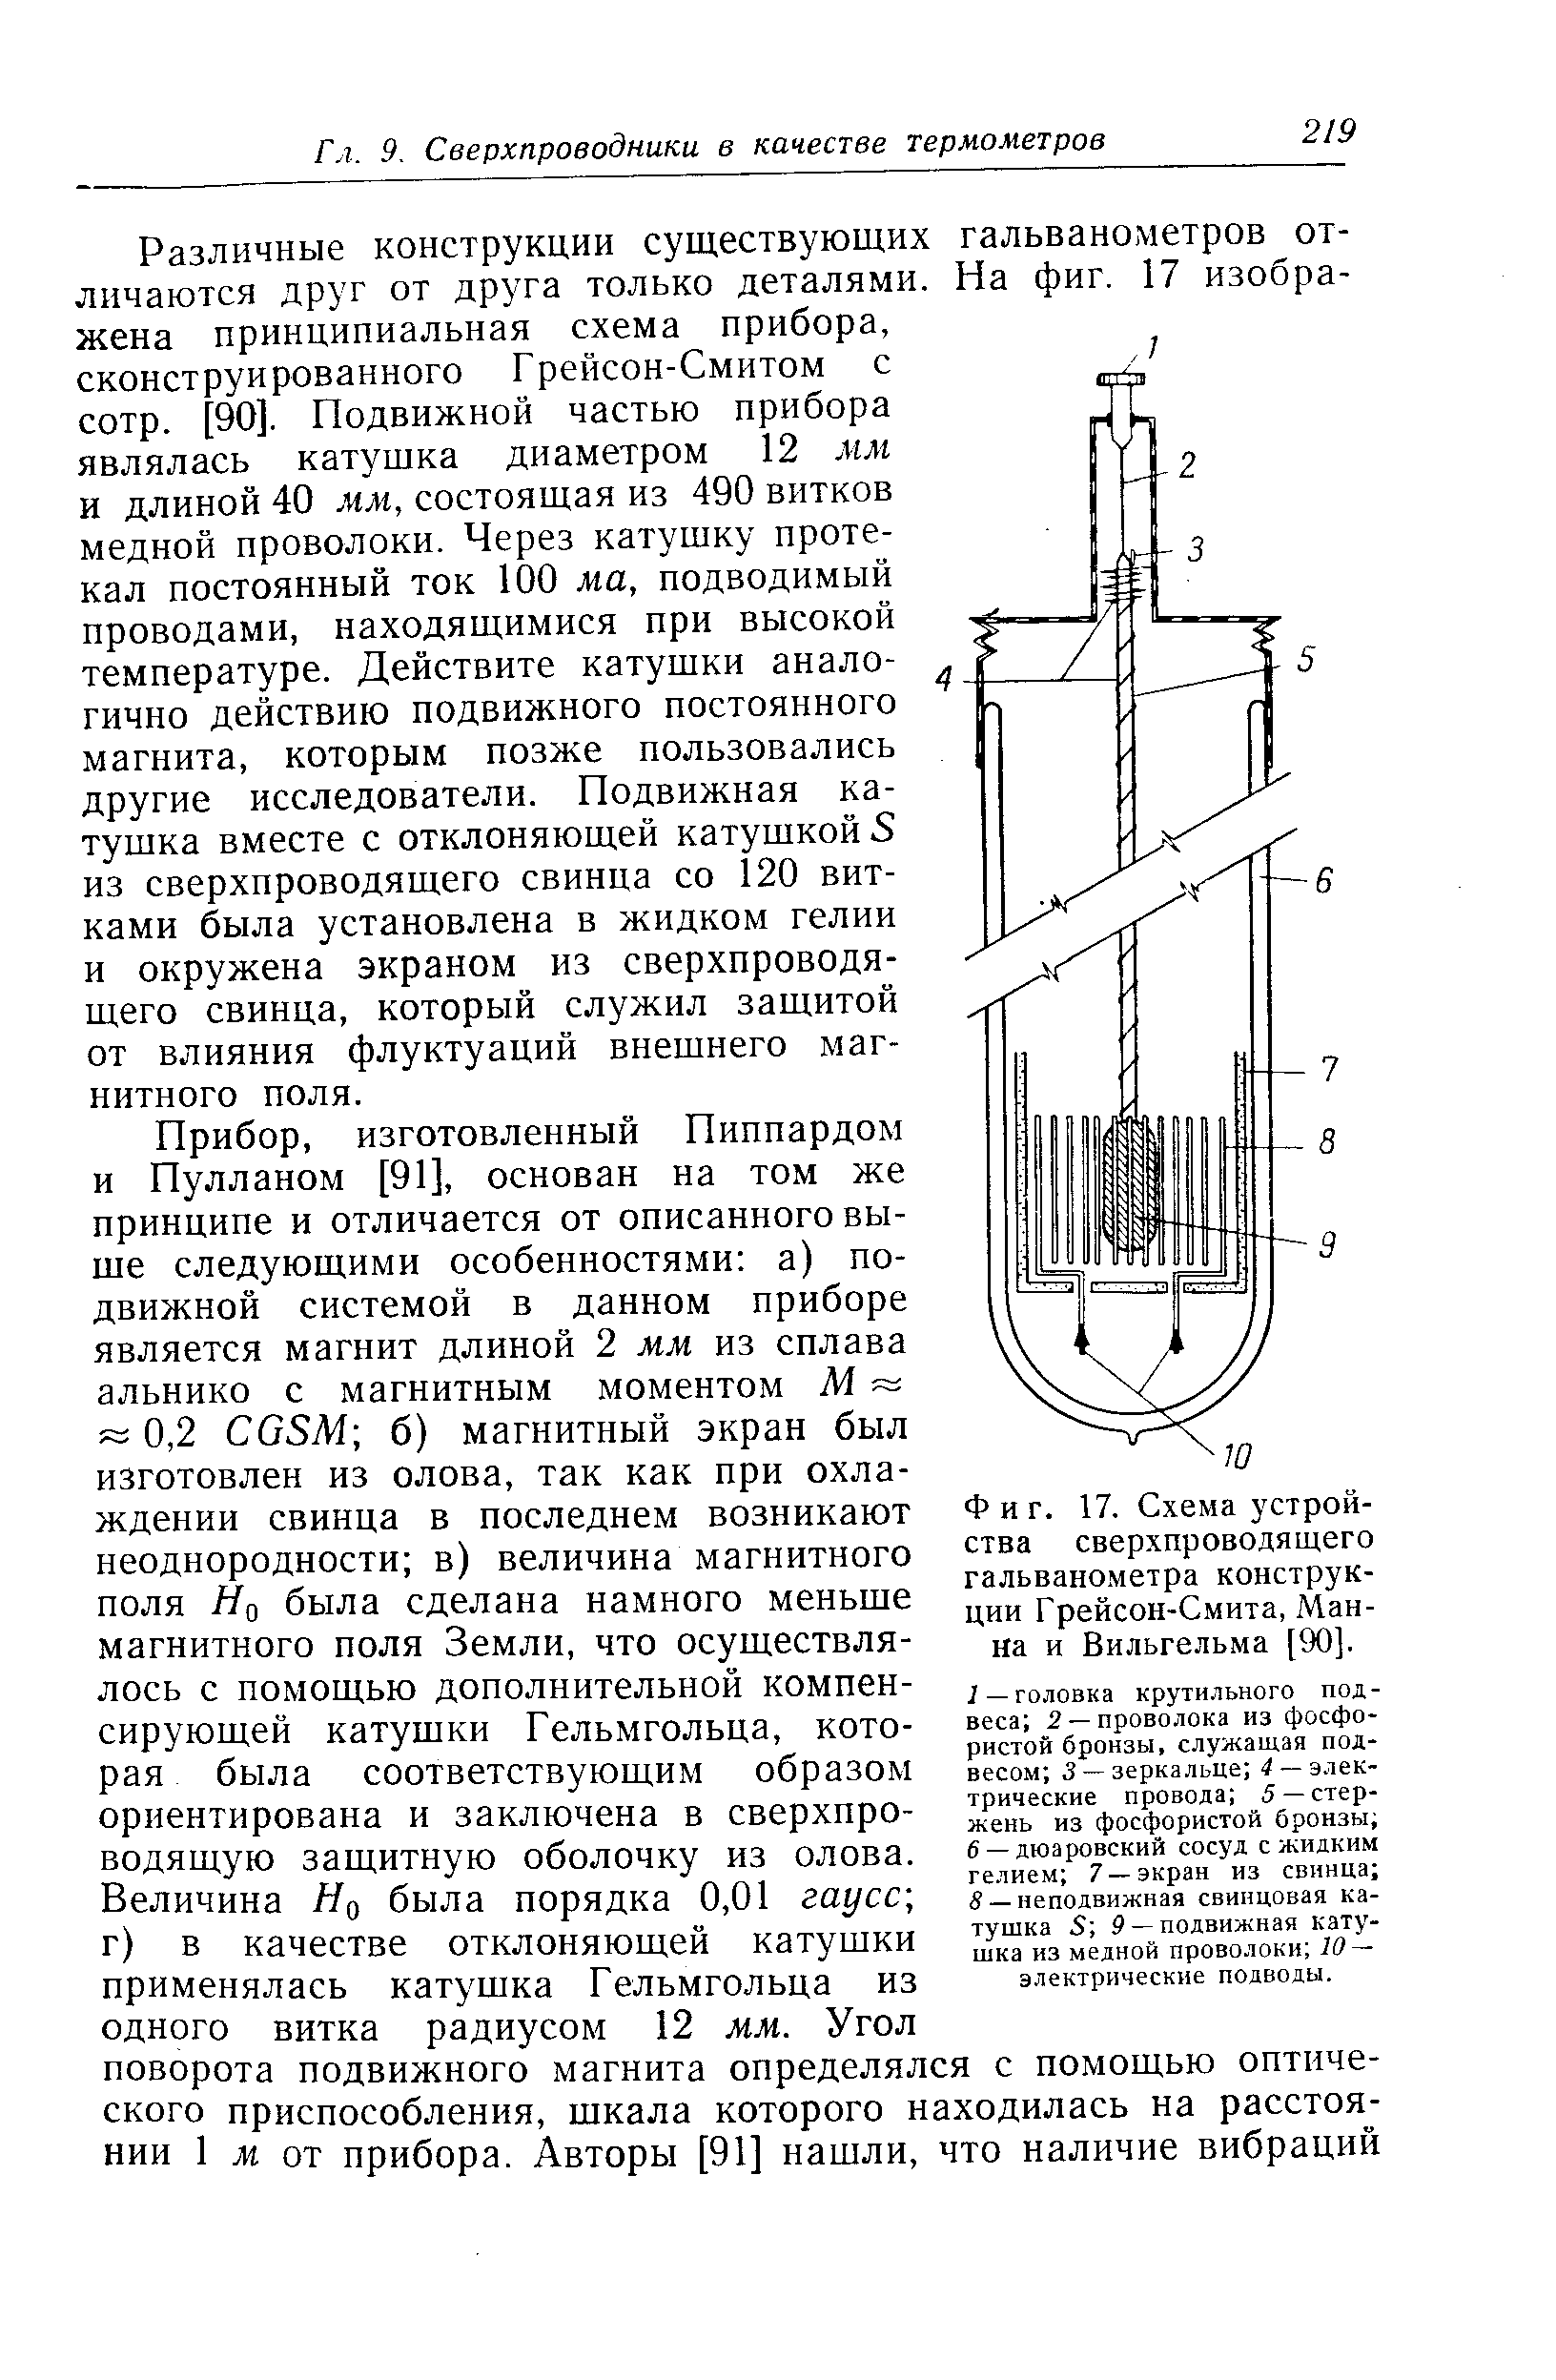 Фиг. 17. Схема устройства <a href="/info/18286">сверхпроводящего гальванометра</a> конструкции Грейсон-Смита, Манна и Вильгельма [90].
